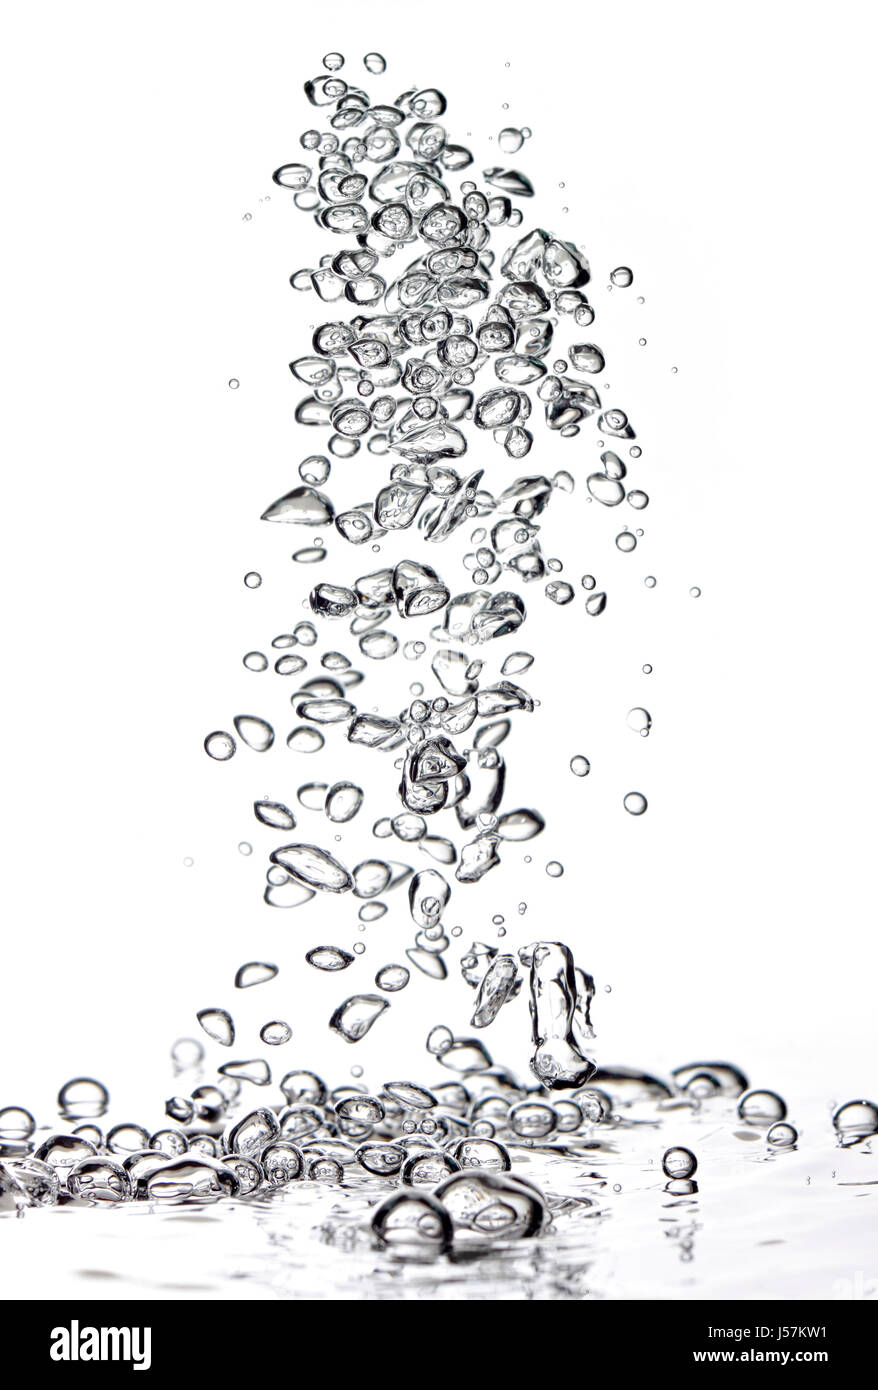 Abstract bolle di aria in acqua fresca su sfondo bianco Foto Stock